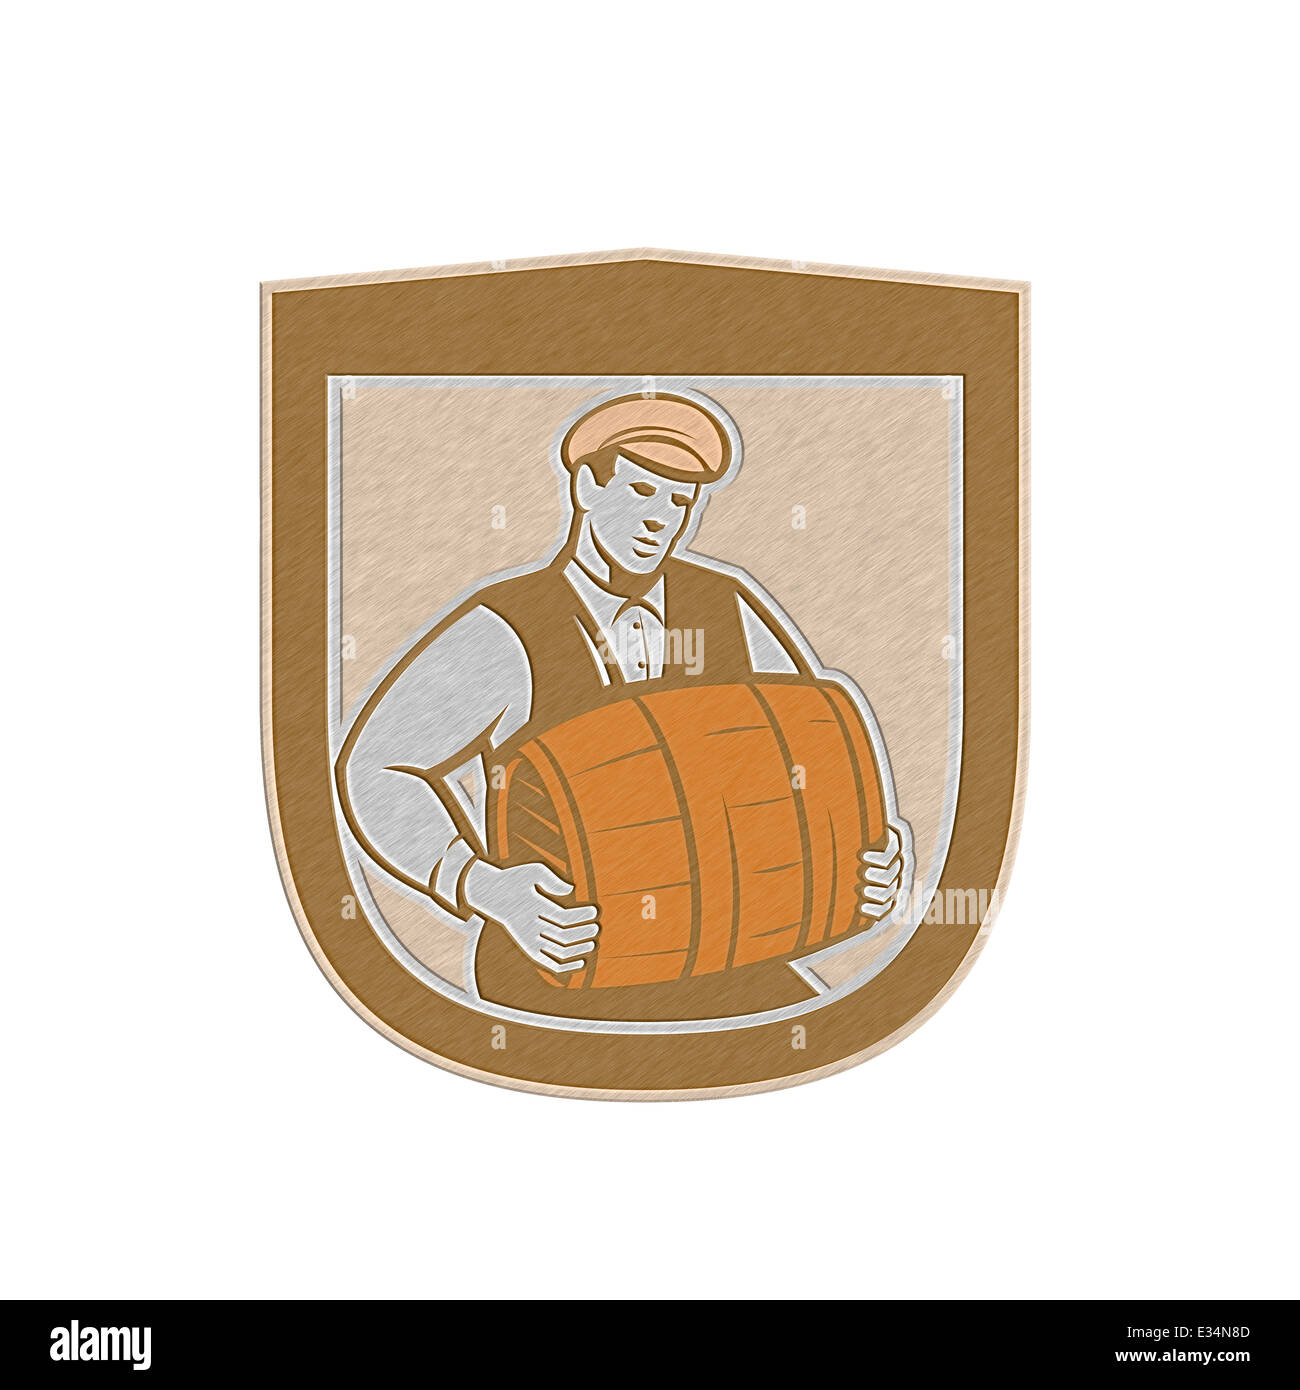 Metallische gestylt Abbildung eines Barkeeper Arbeitnehmers Keg setzen innen Schild Wappen auf isolierten weißen Hintergrund getan im retro-Stil tragen. Stockfoto